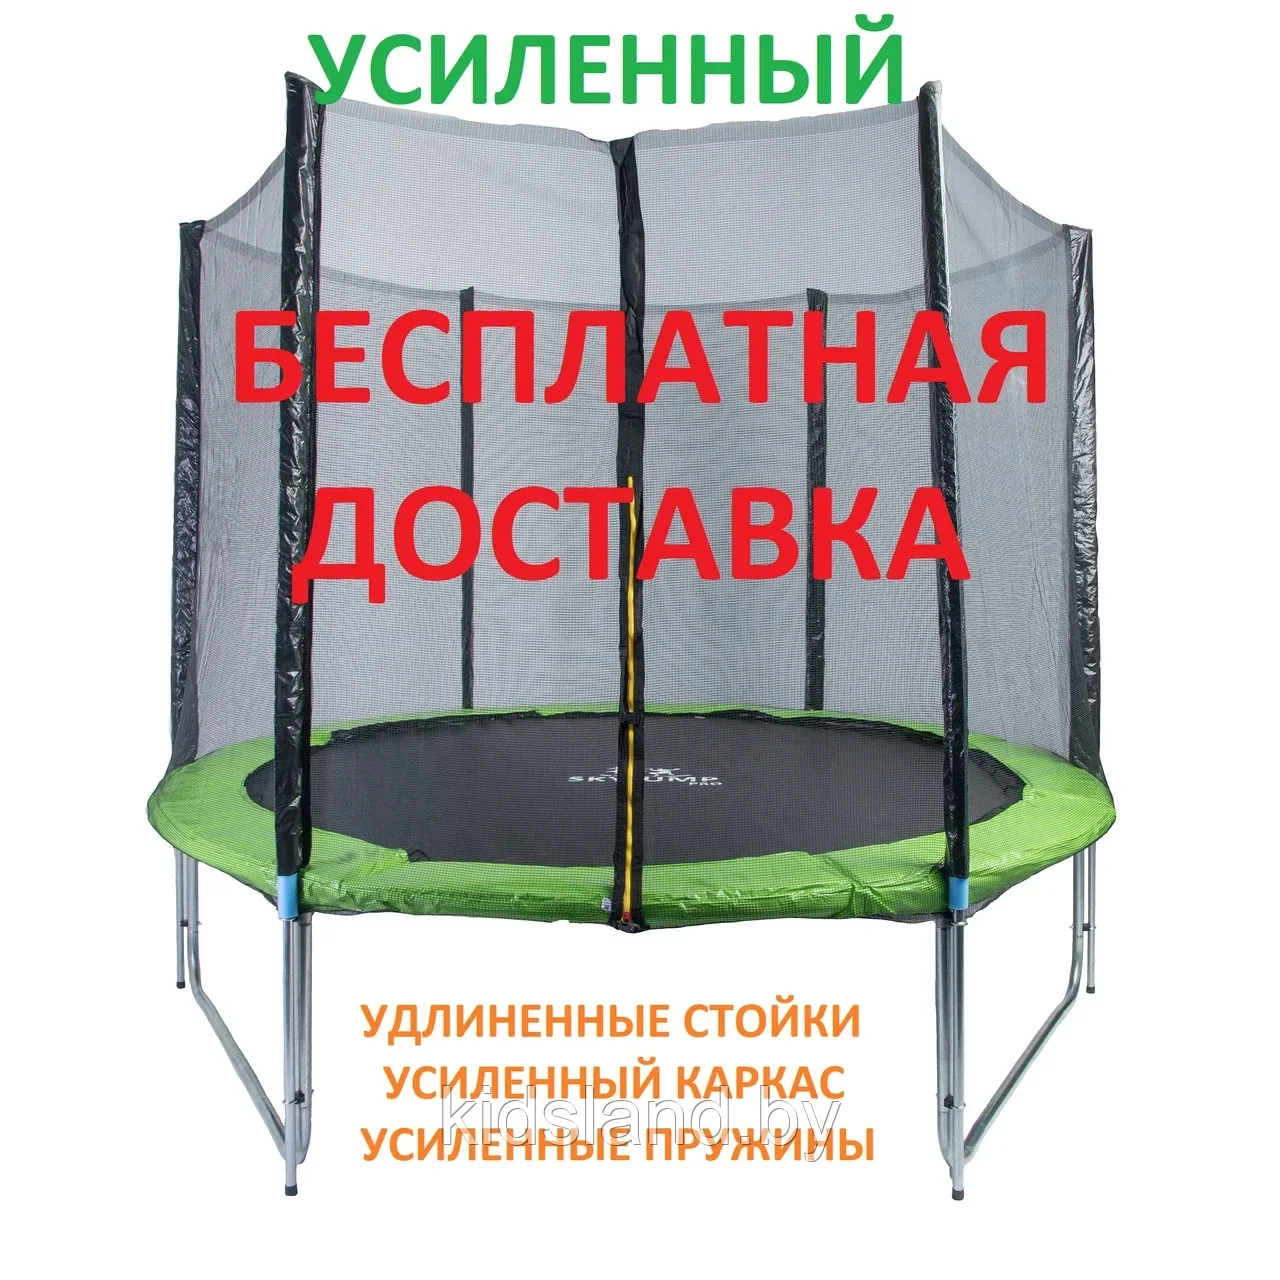 Батут Sport Basic PRO 8ft (252 см) УСИЛЕННЫЙ с внешней сеткой безопасности и лестницей